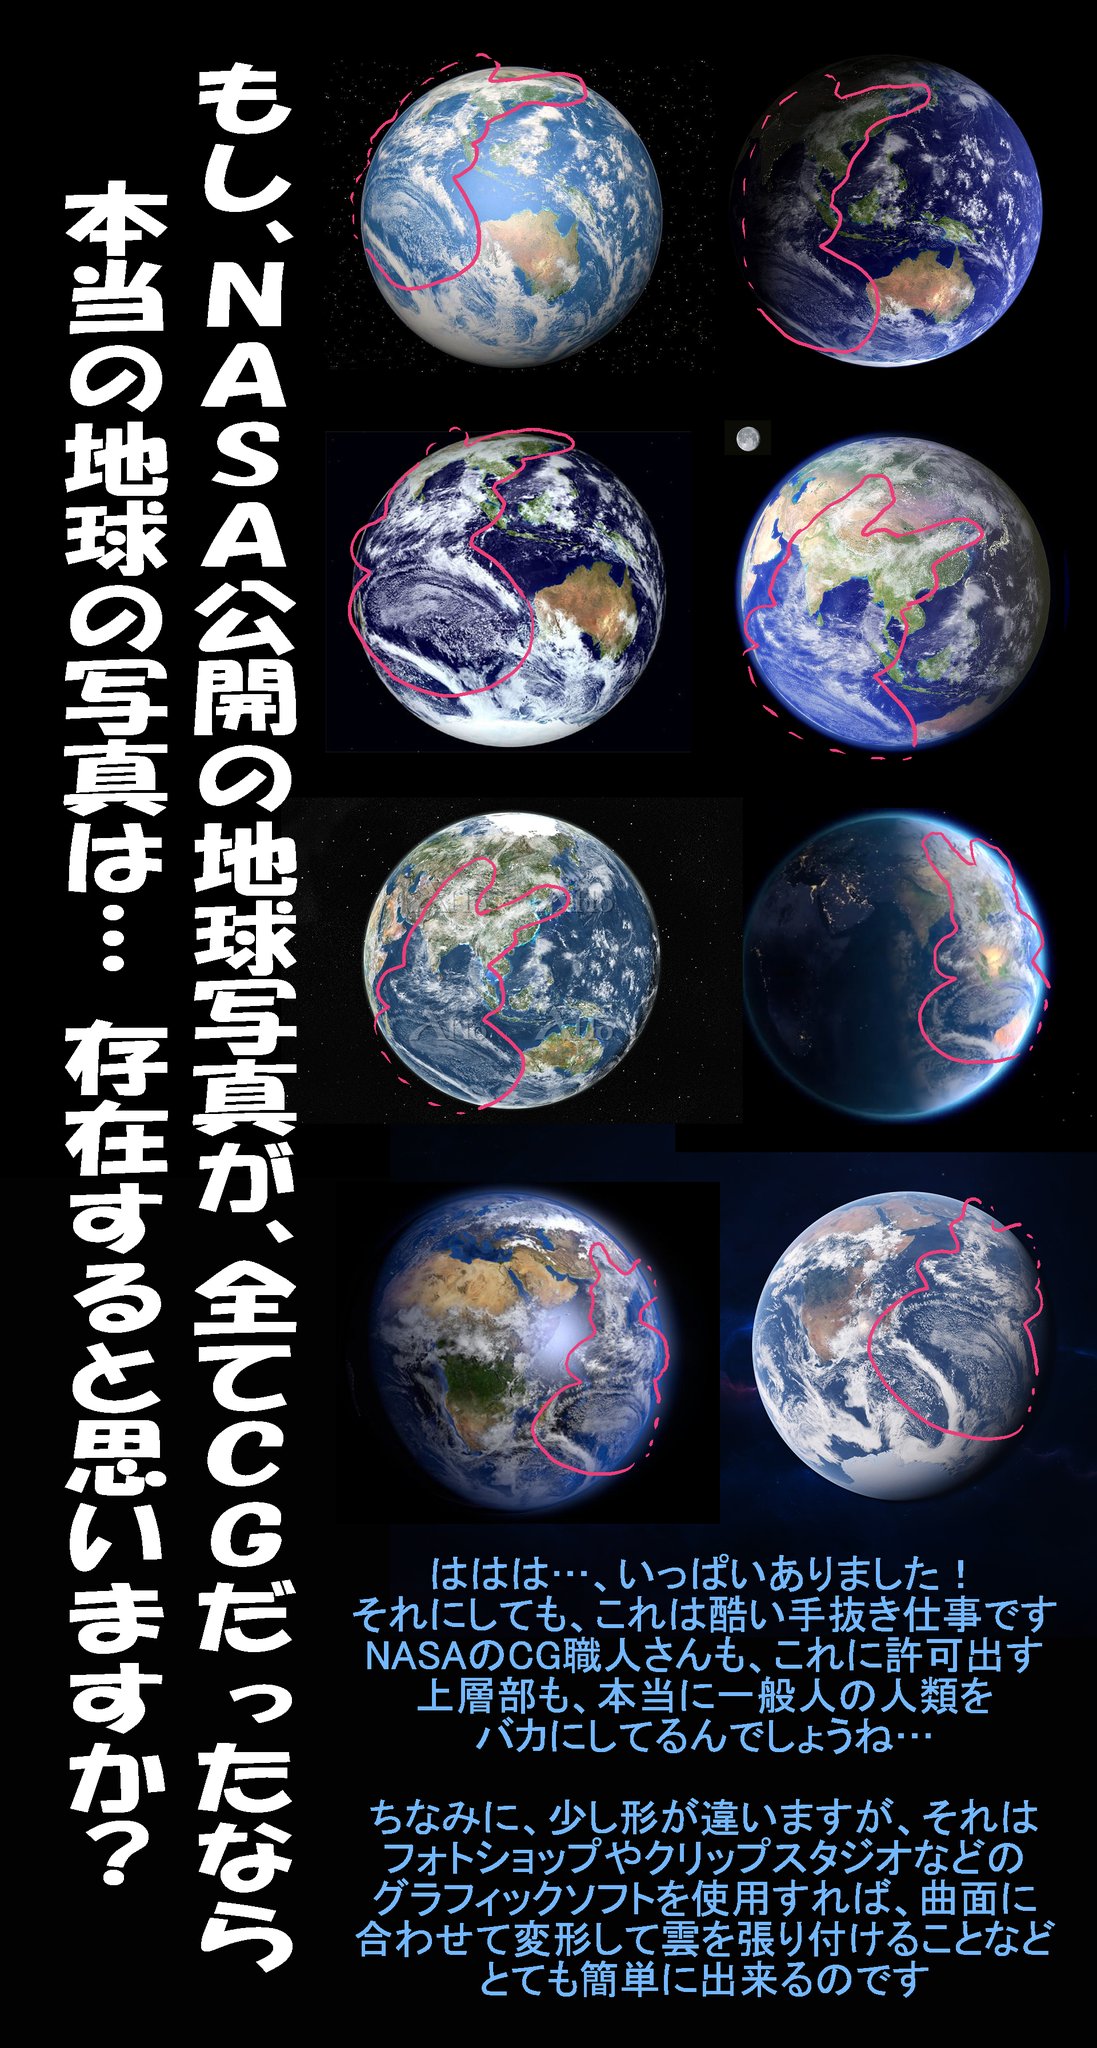 ルカ Nasaの地球の写真は すべてcg T Co Tn5tzxb56t Twitter